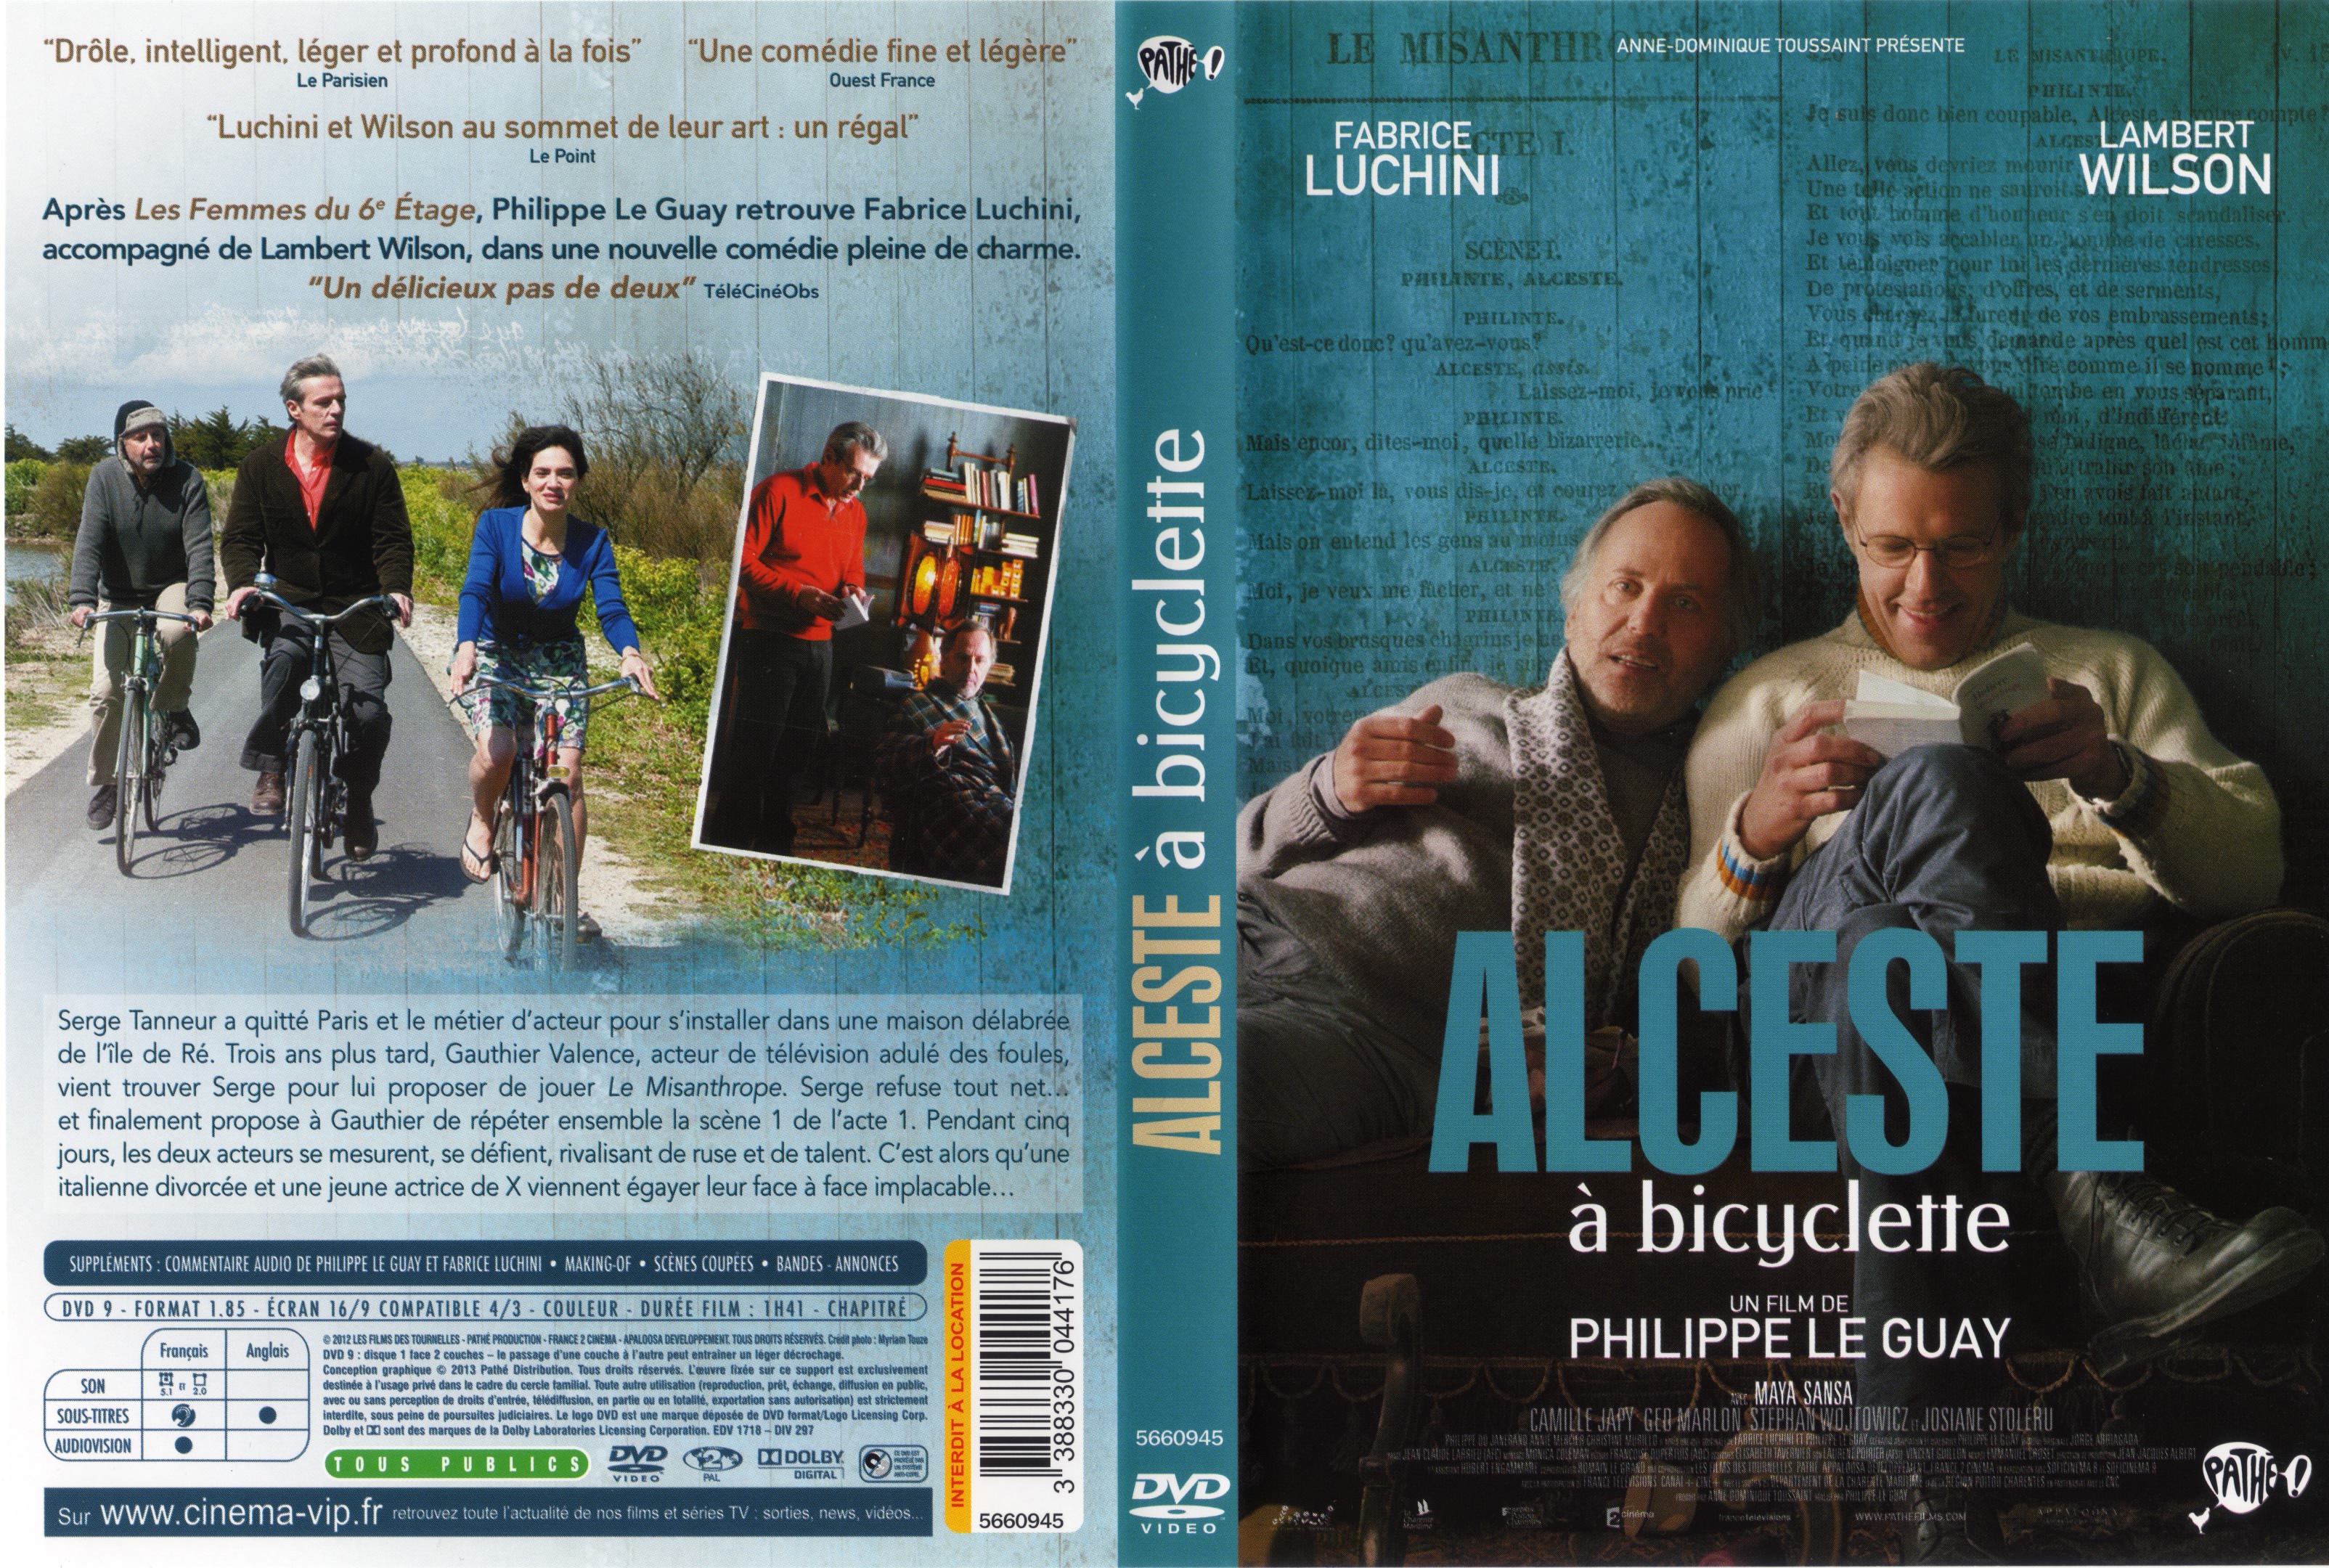 Jaquette DVD Alceste  bicyclette